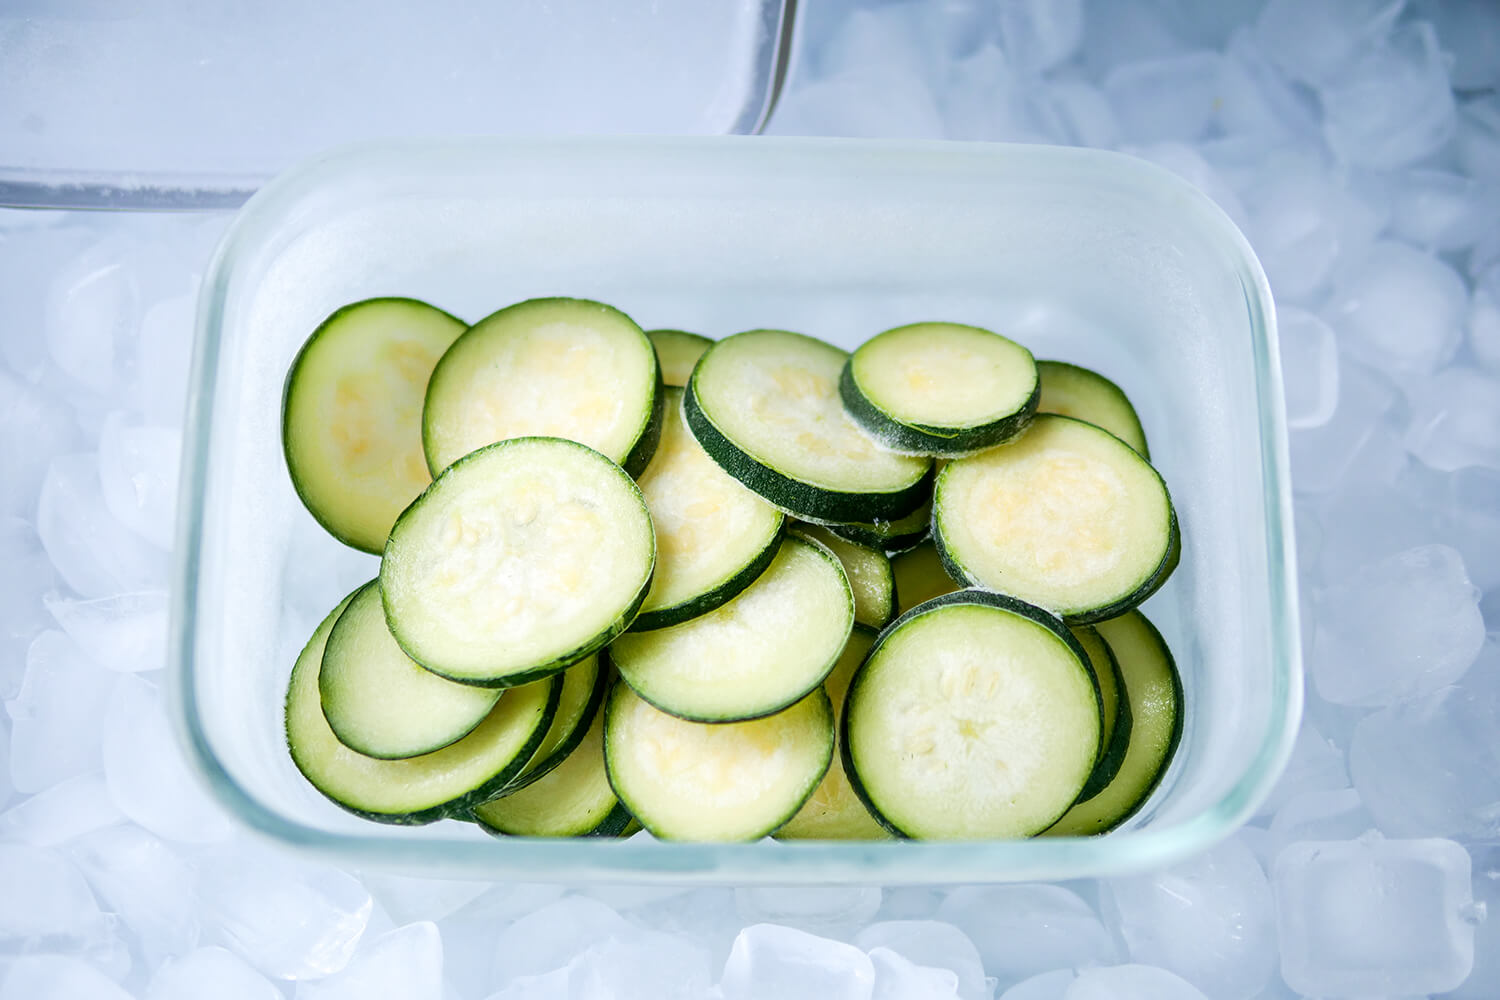 In Scheiben geschnittene, gefrorene Zucchini in einer Glasschüssel, umgeben von Eiswürfeln im Gefrierfach.